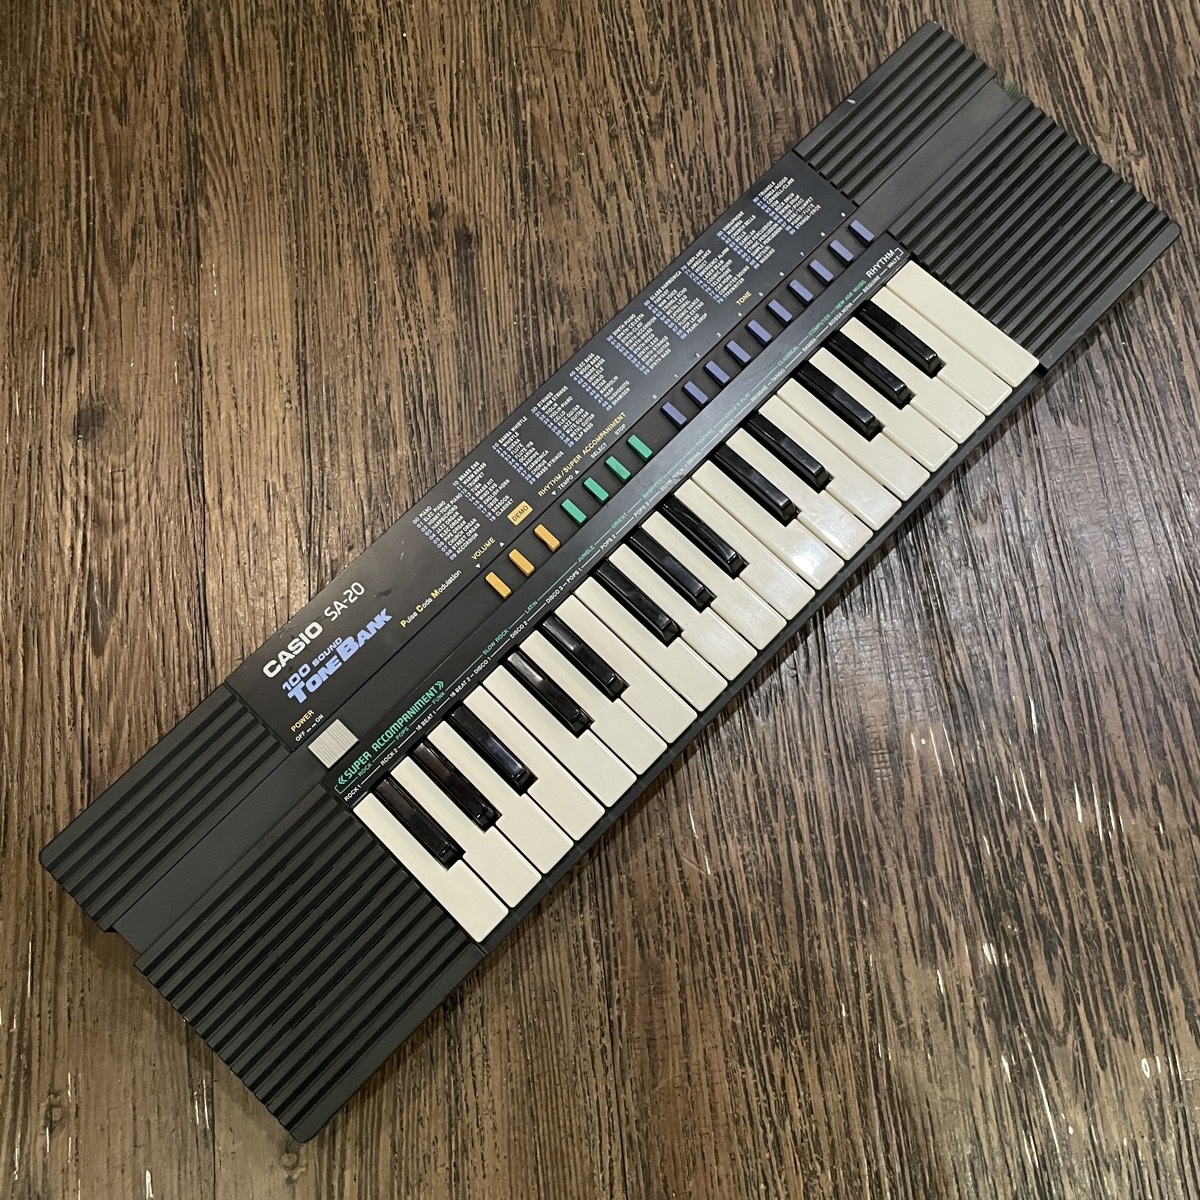 Casio SA-20 Keyboard keyboard Casio -GrunSound-m106-